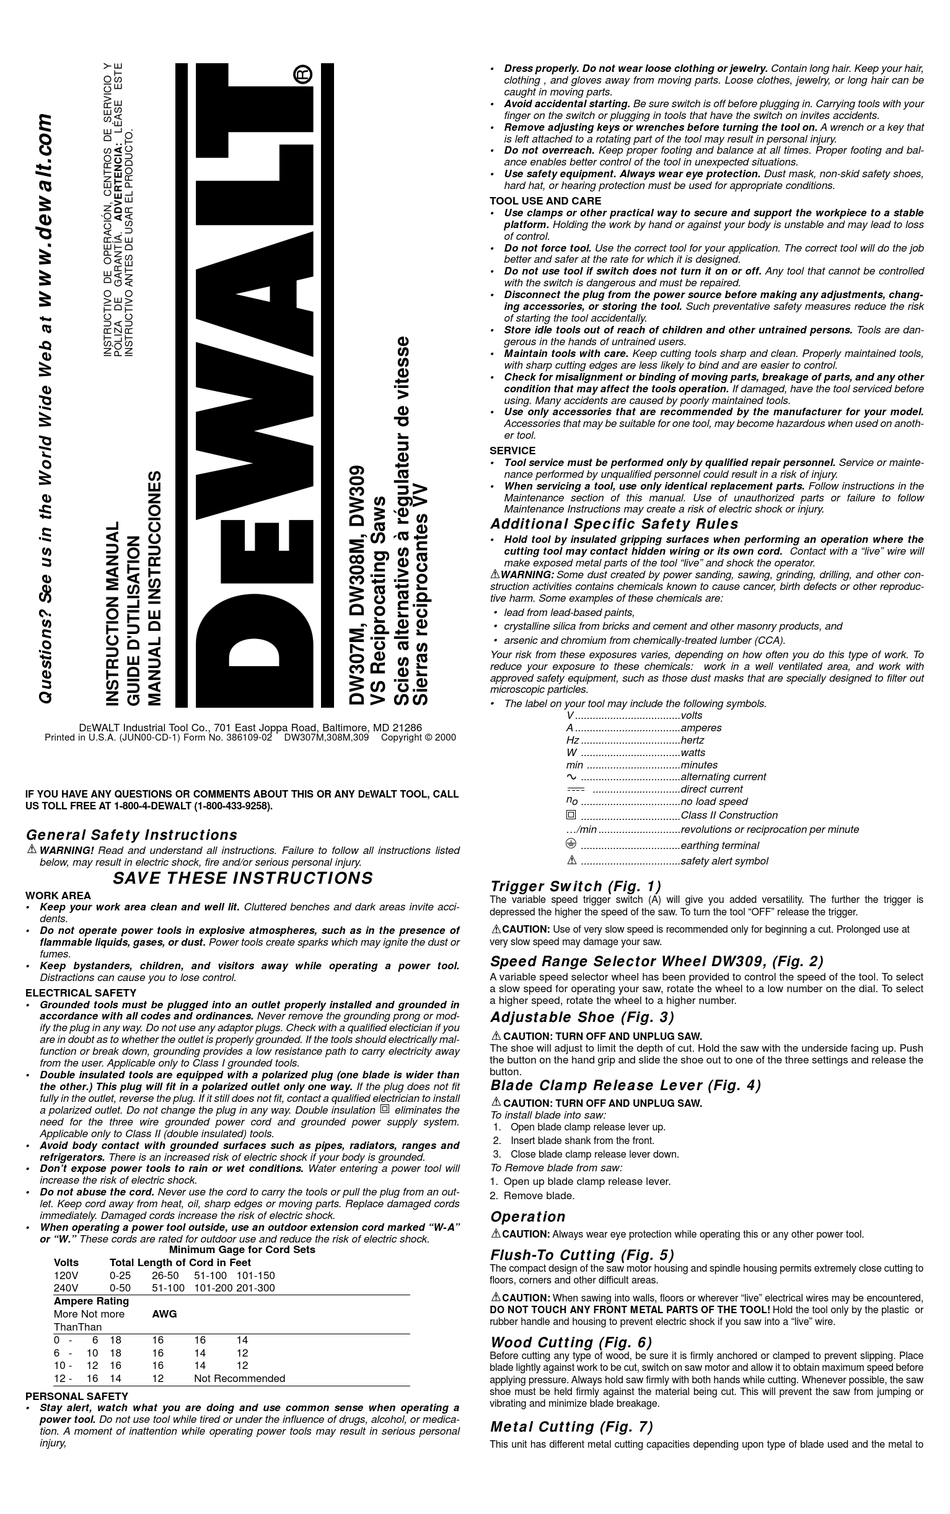 sammenhængende Sump damp DEWALT DW307M NSTRUCTION INSTRUCTION MANUAL Pdf Download | ManualsLib